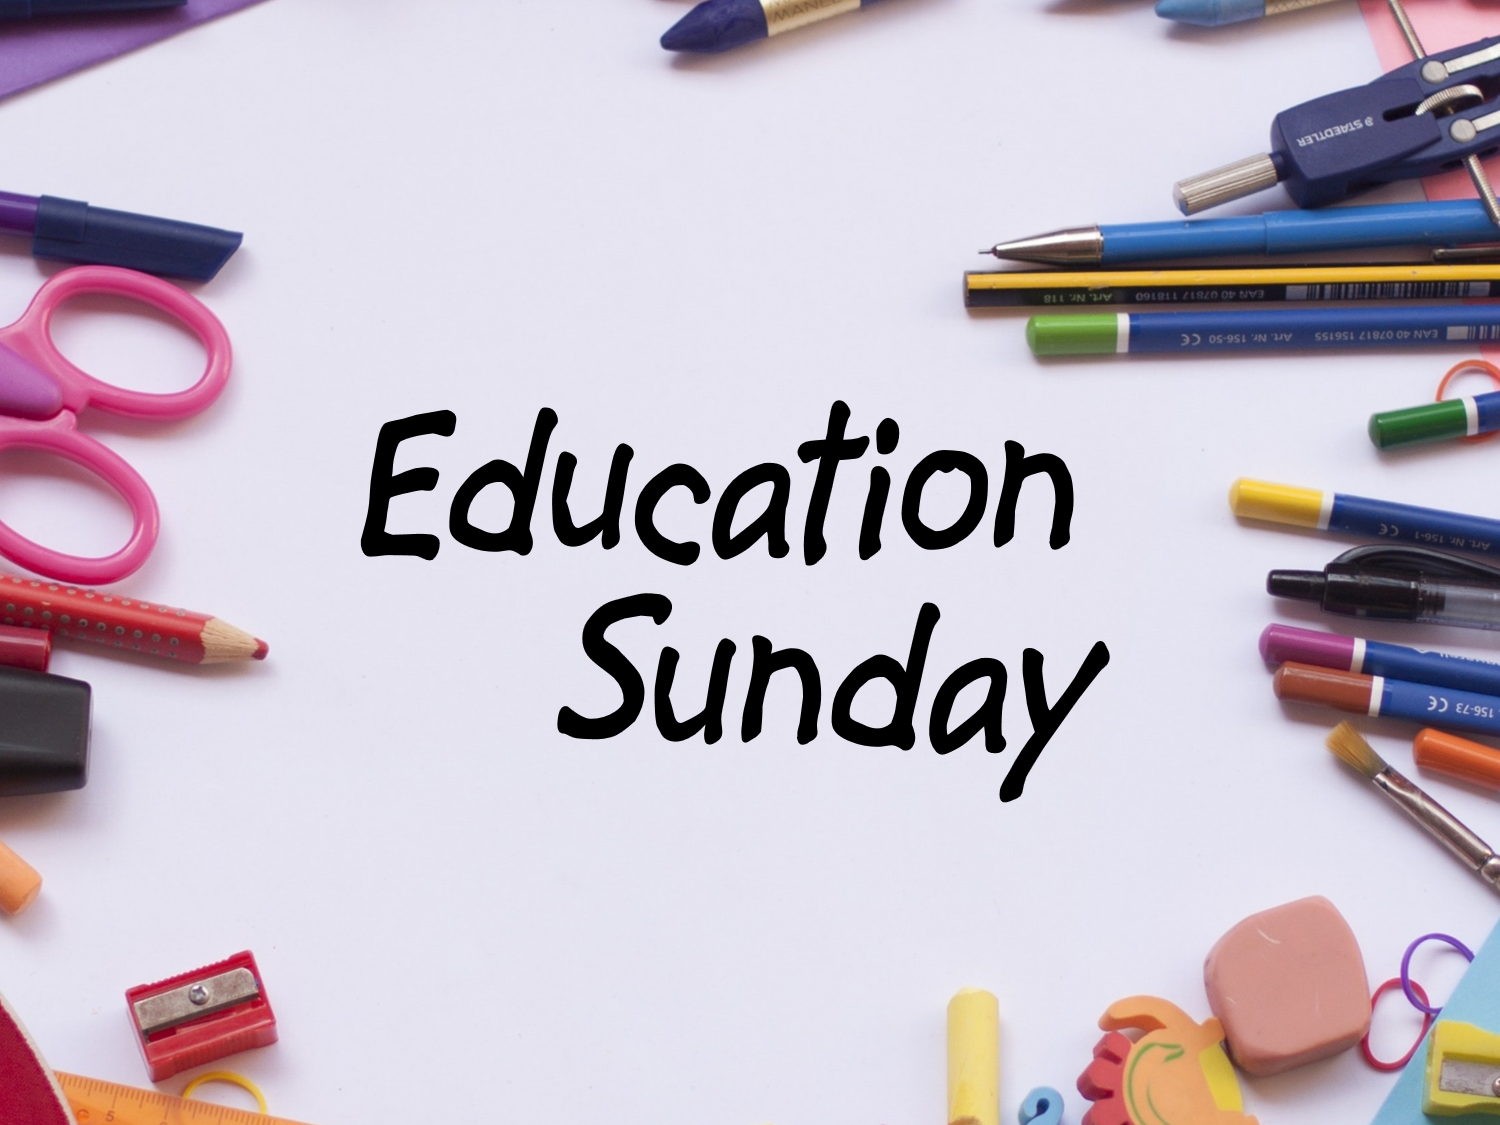 Education Sunday 2019